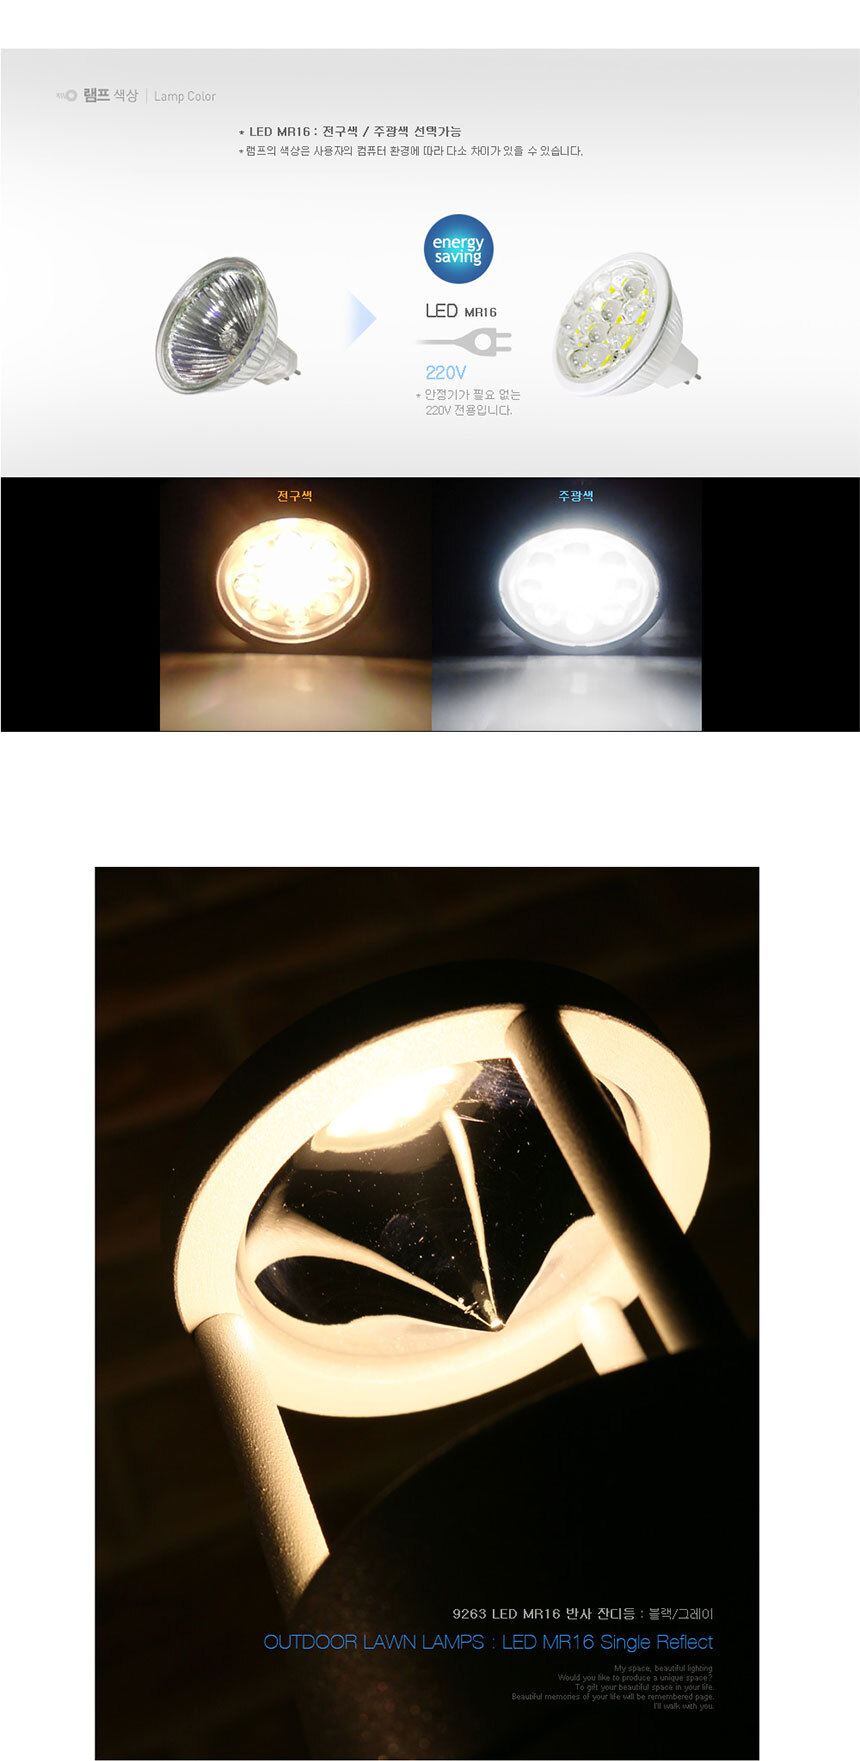 램프색상 LED MR16 : 전구색 / 주광색 선택가능
램프의 색상은 사용자의 컴퓨터 환경에 따라 다소 차이가 있을 수 있씁니다
LED MR16 220V 안정기가 필요 없는 220V 전용입니다
9263 LED MR16 반사 잔디등(블랙/그레이)
 